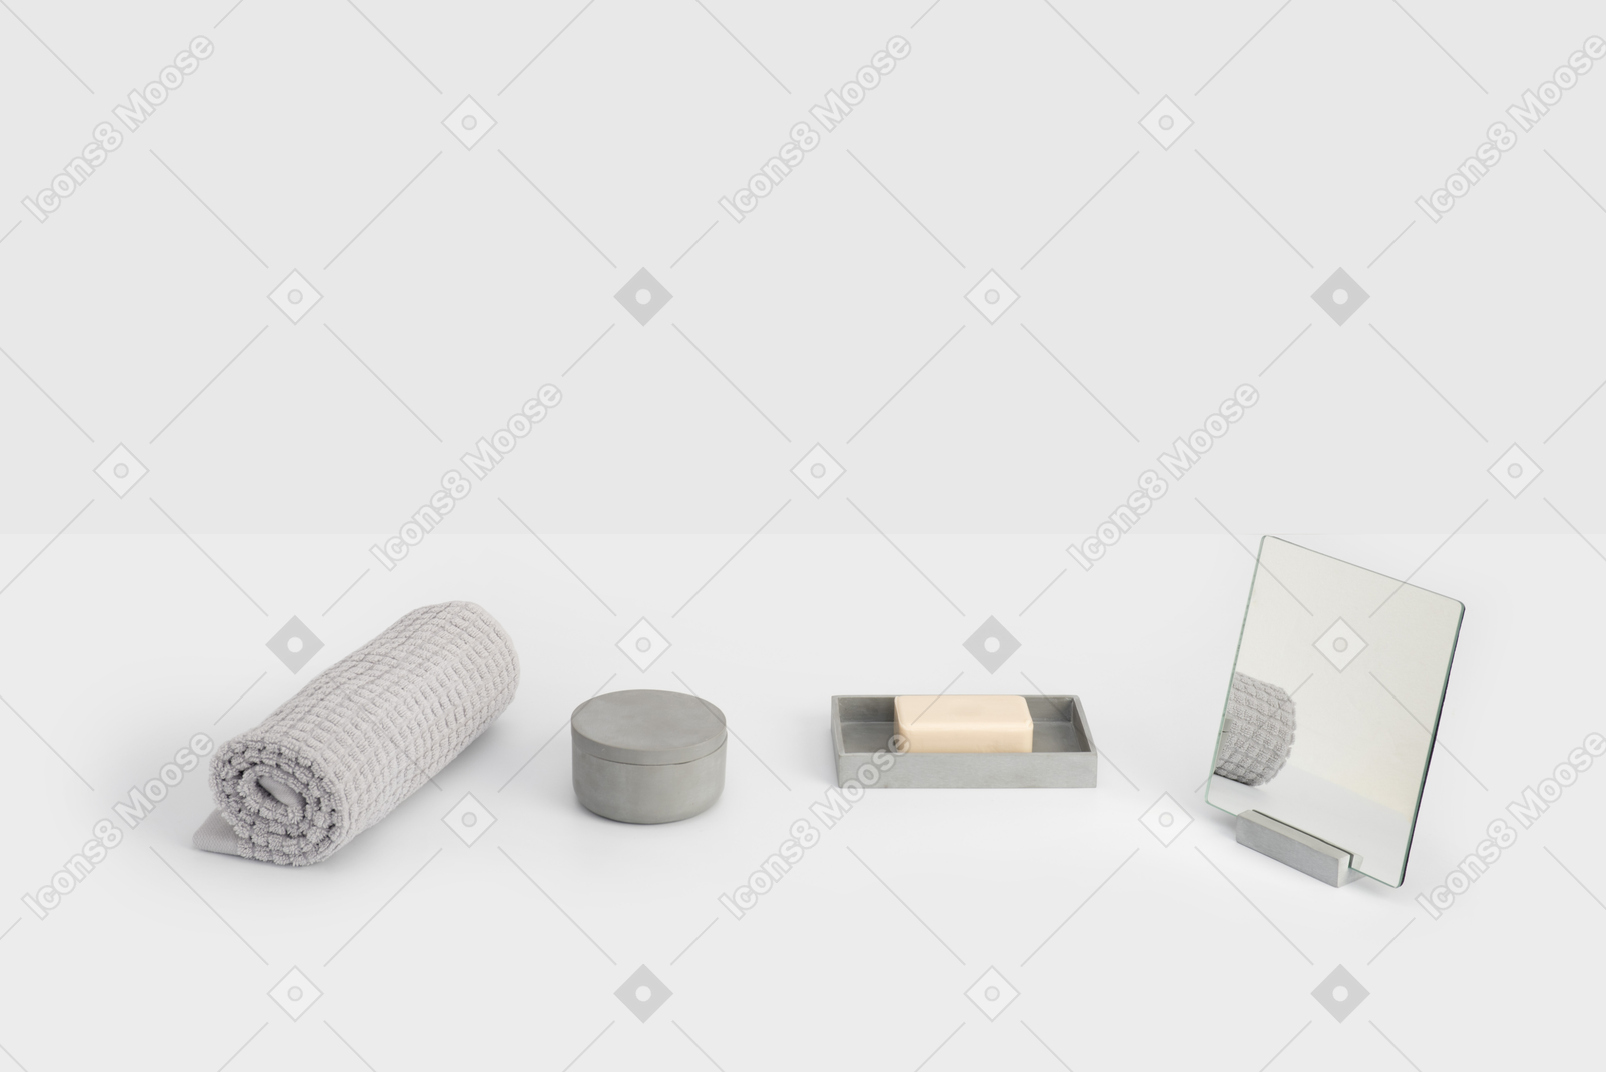 Accesorios de baño en backgroung gris